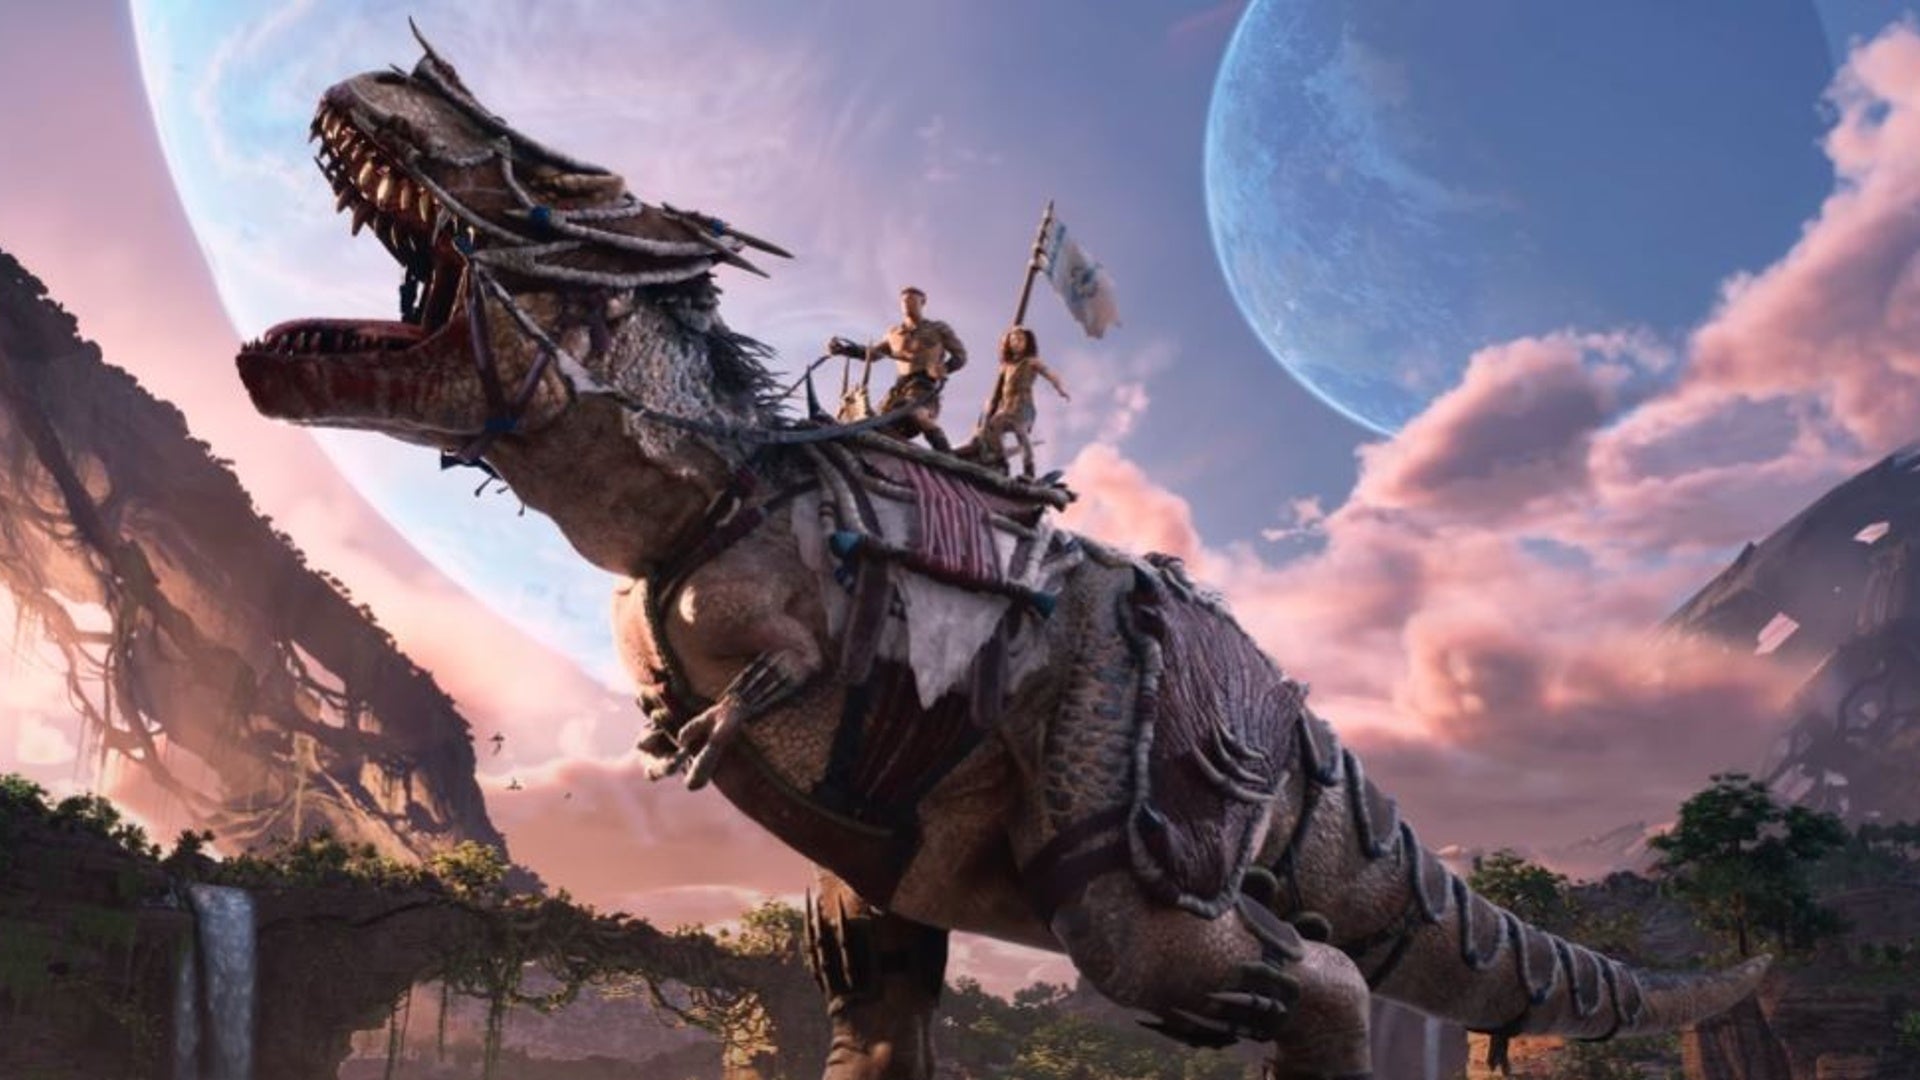 ARK 2 stars Vin Diesel as a dinosaur-riding dad.